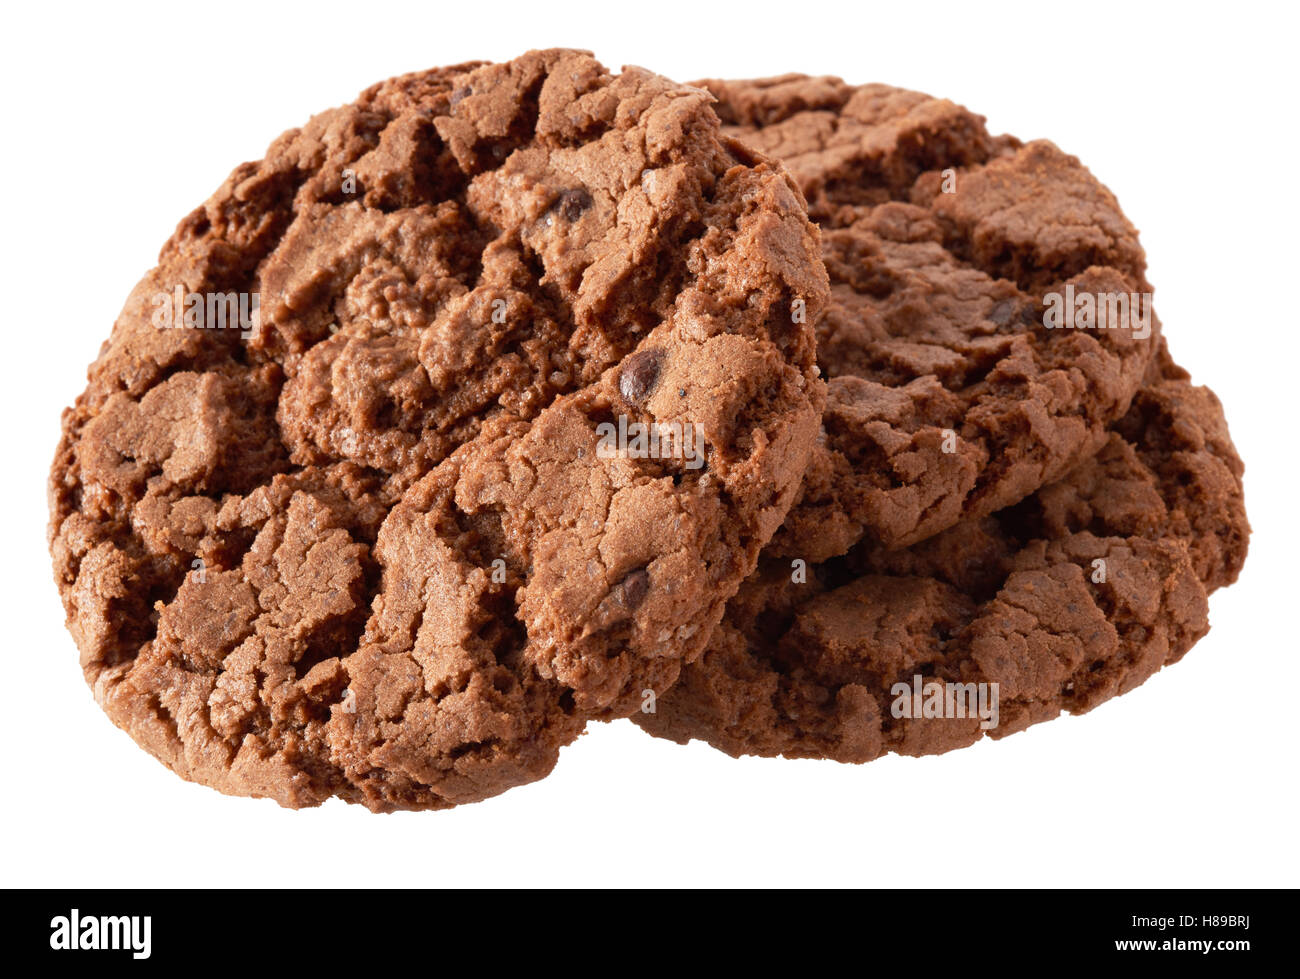 Objets isolés : groupe des cookies au chocolat noir, isolé sur fond blanc Banque D'Images